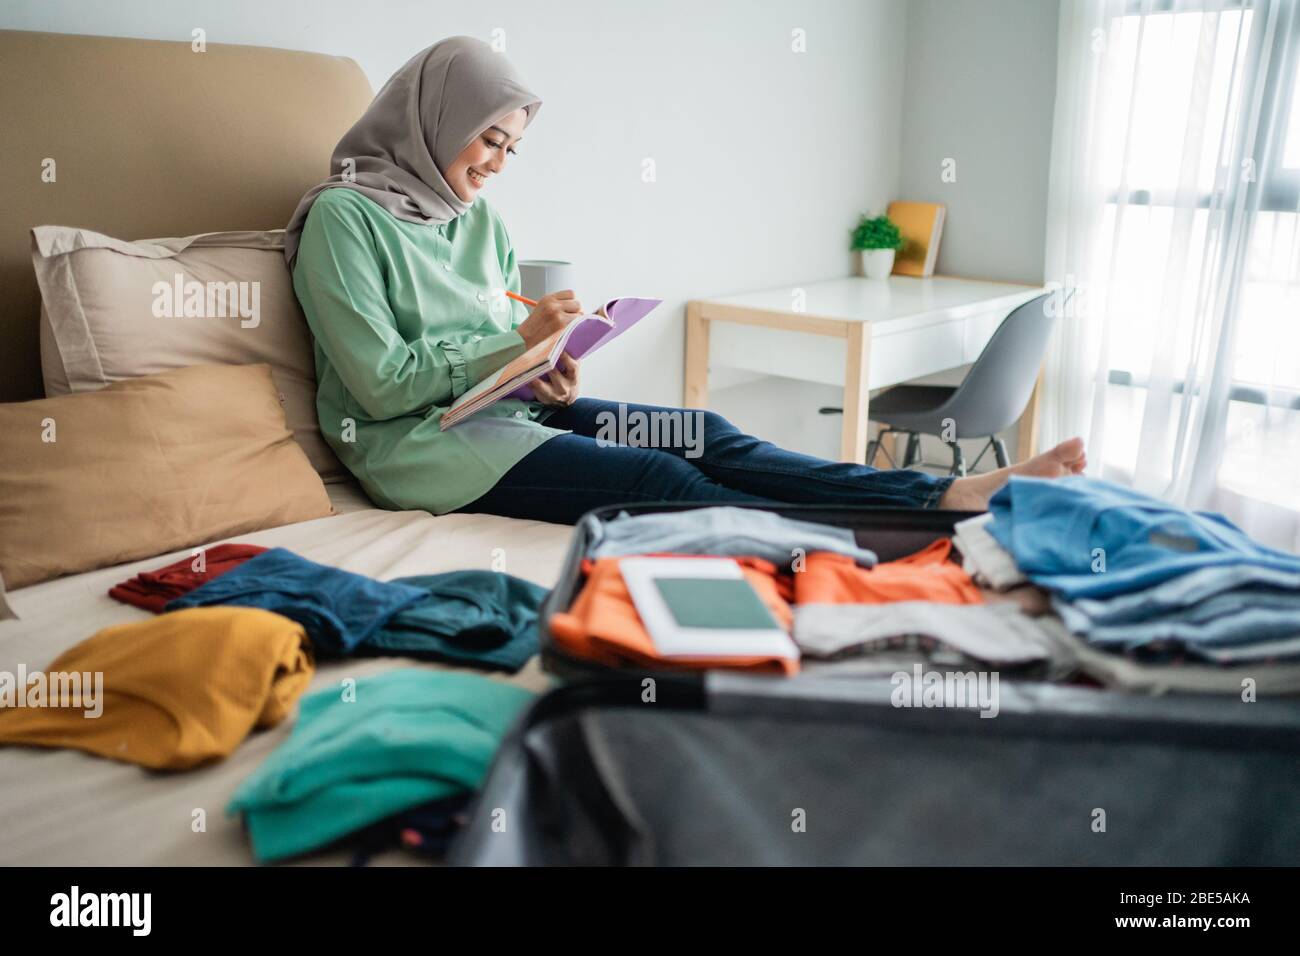 Verschleierte Frau, die auf dem Bett sitzt, während sie die Liste der Gegenstände betrachtet, die im Urlaub weggenommen werden sollen Stockfoto